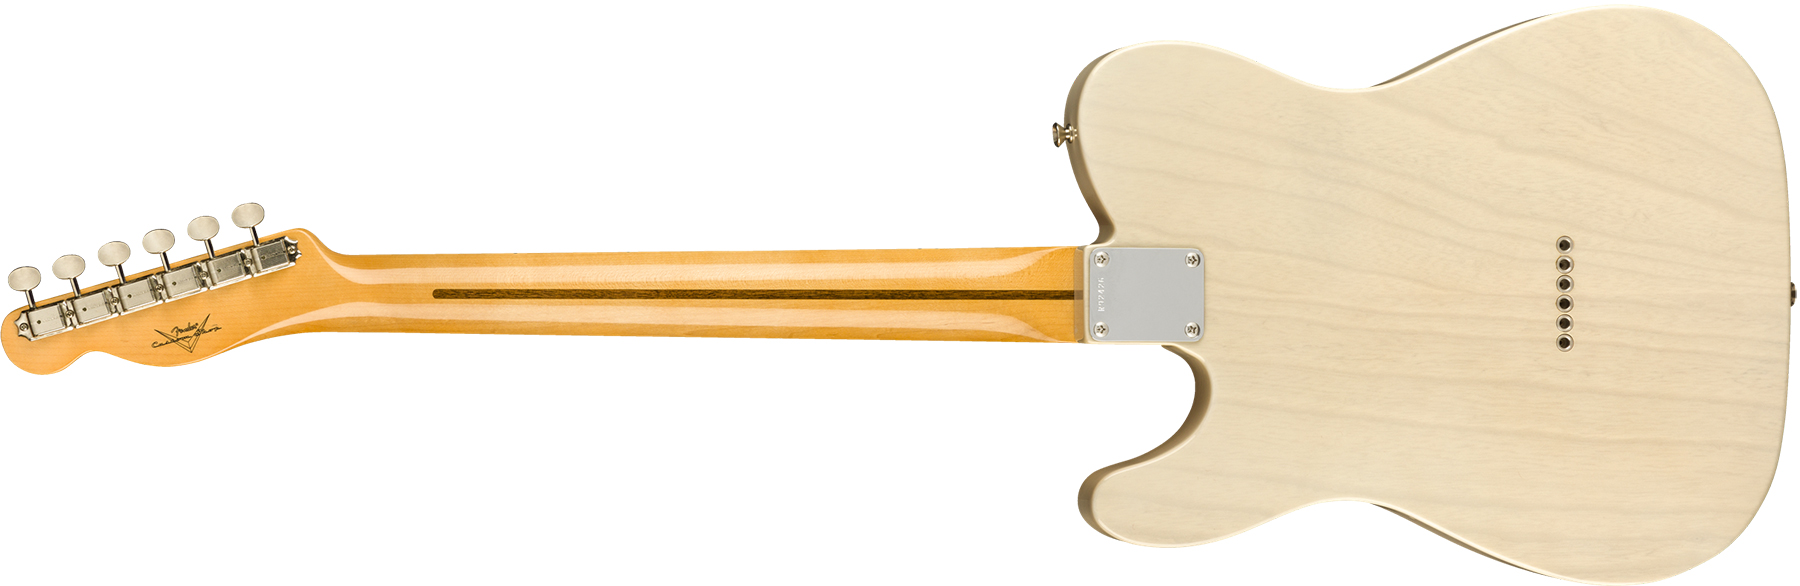 Fender Custom Shop Tele Vintage Custom 1958 Top Load Ltd Mn - Nos Aged White Blonde - E-Gitarre in Teleform - Variation 1